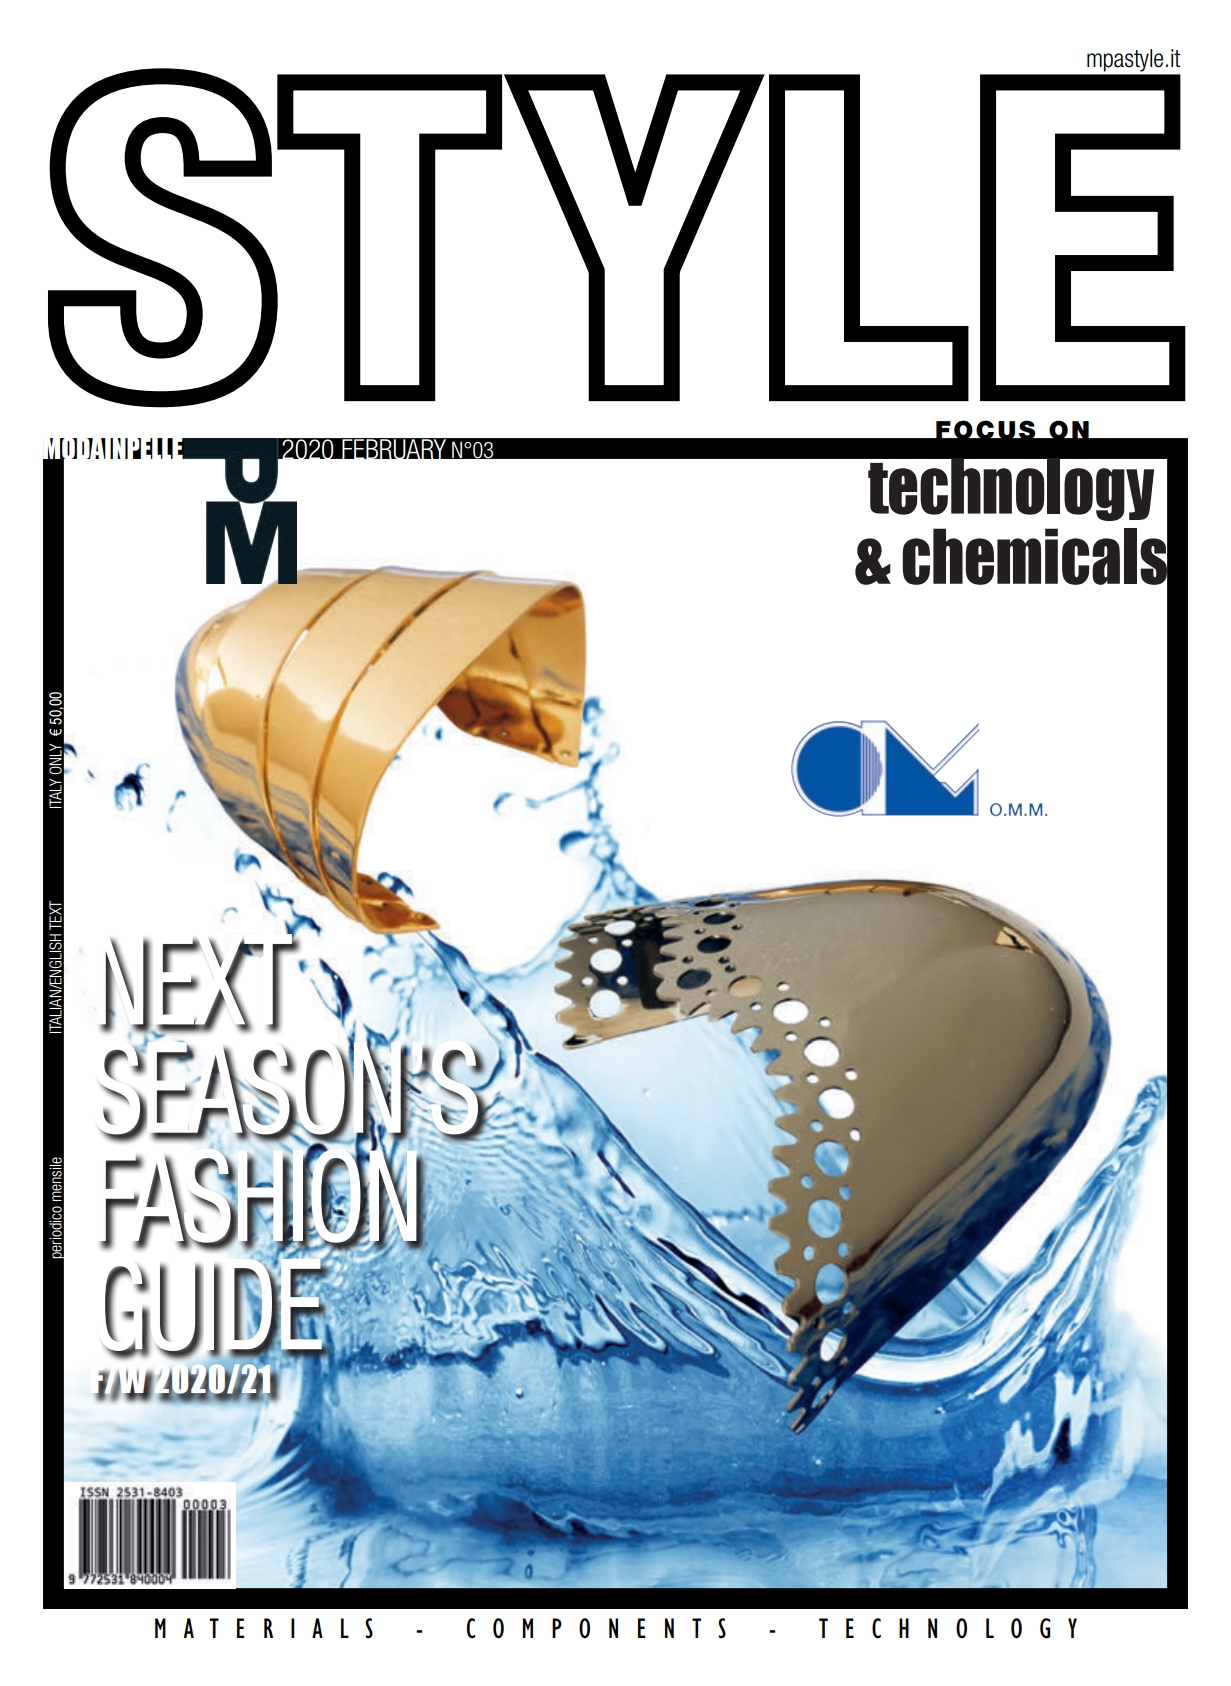 《Moda Pelle Style》意大利鞋包皮具专业杂志2020年02月号